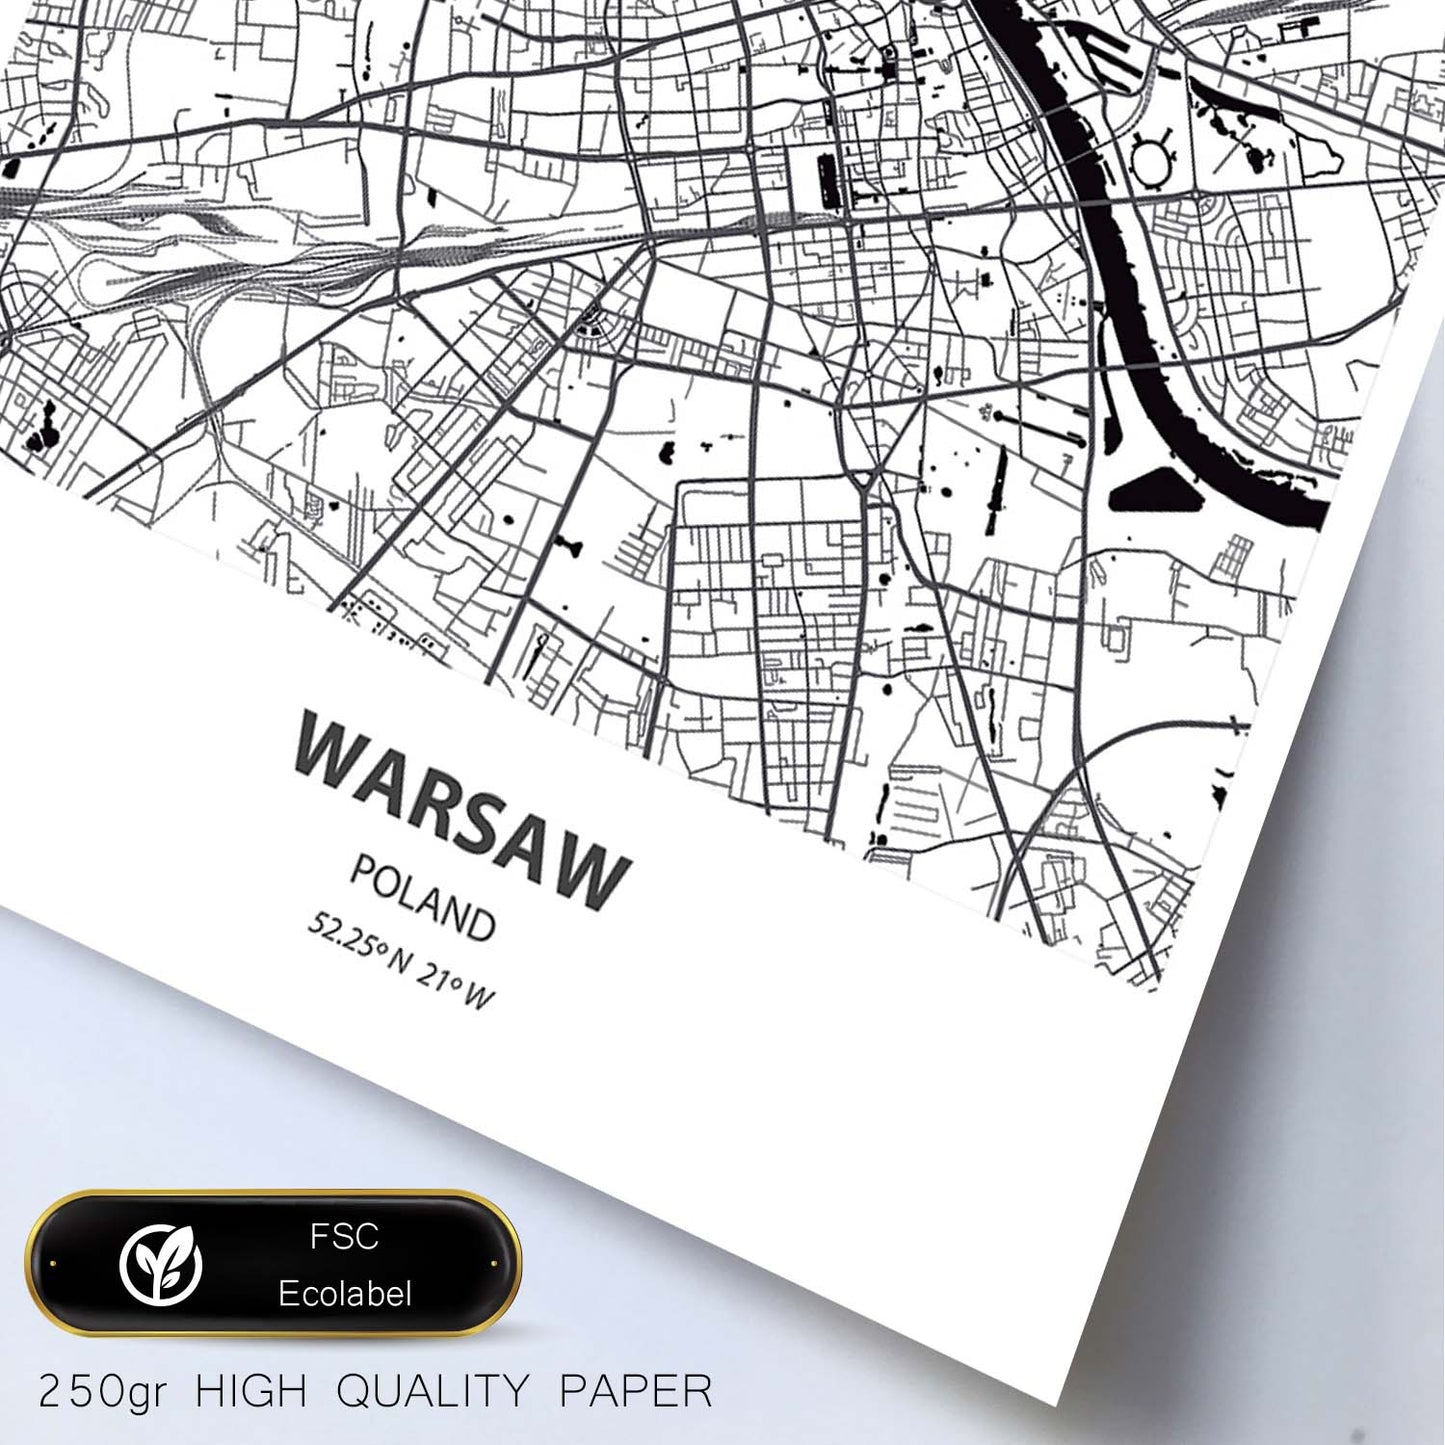 Poster con mapa de Warsaw - Polonia. Láminas de ciudades de Europa con mares y ríos en color negro.-Artwork-Nacnic-Nacnic Estudio SL